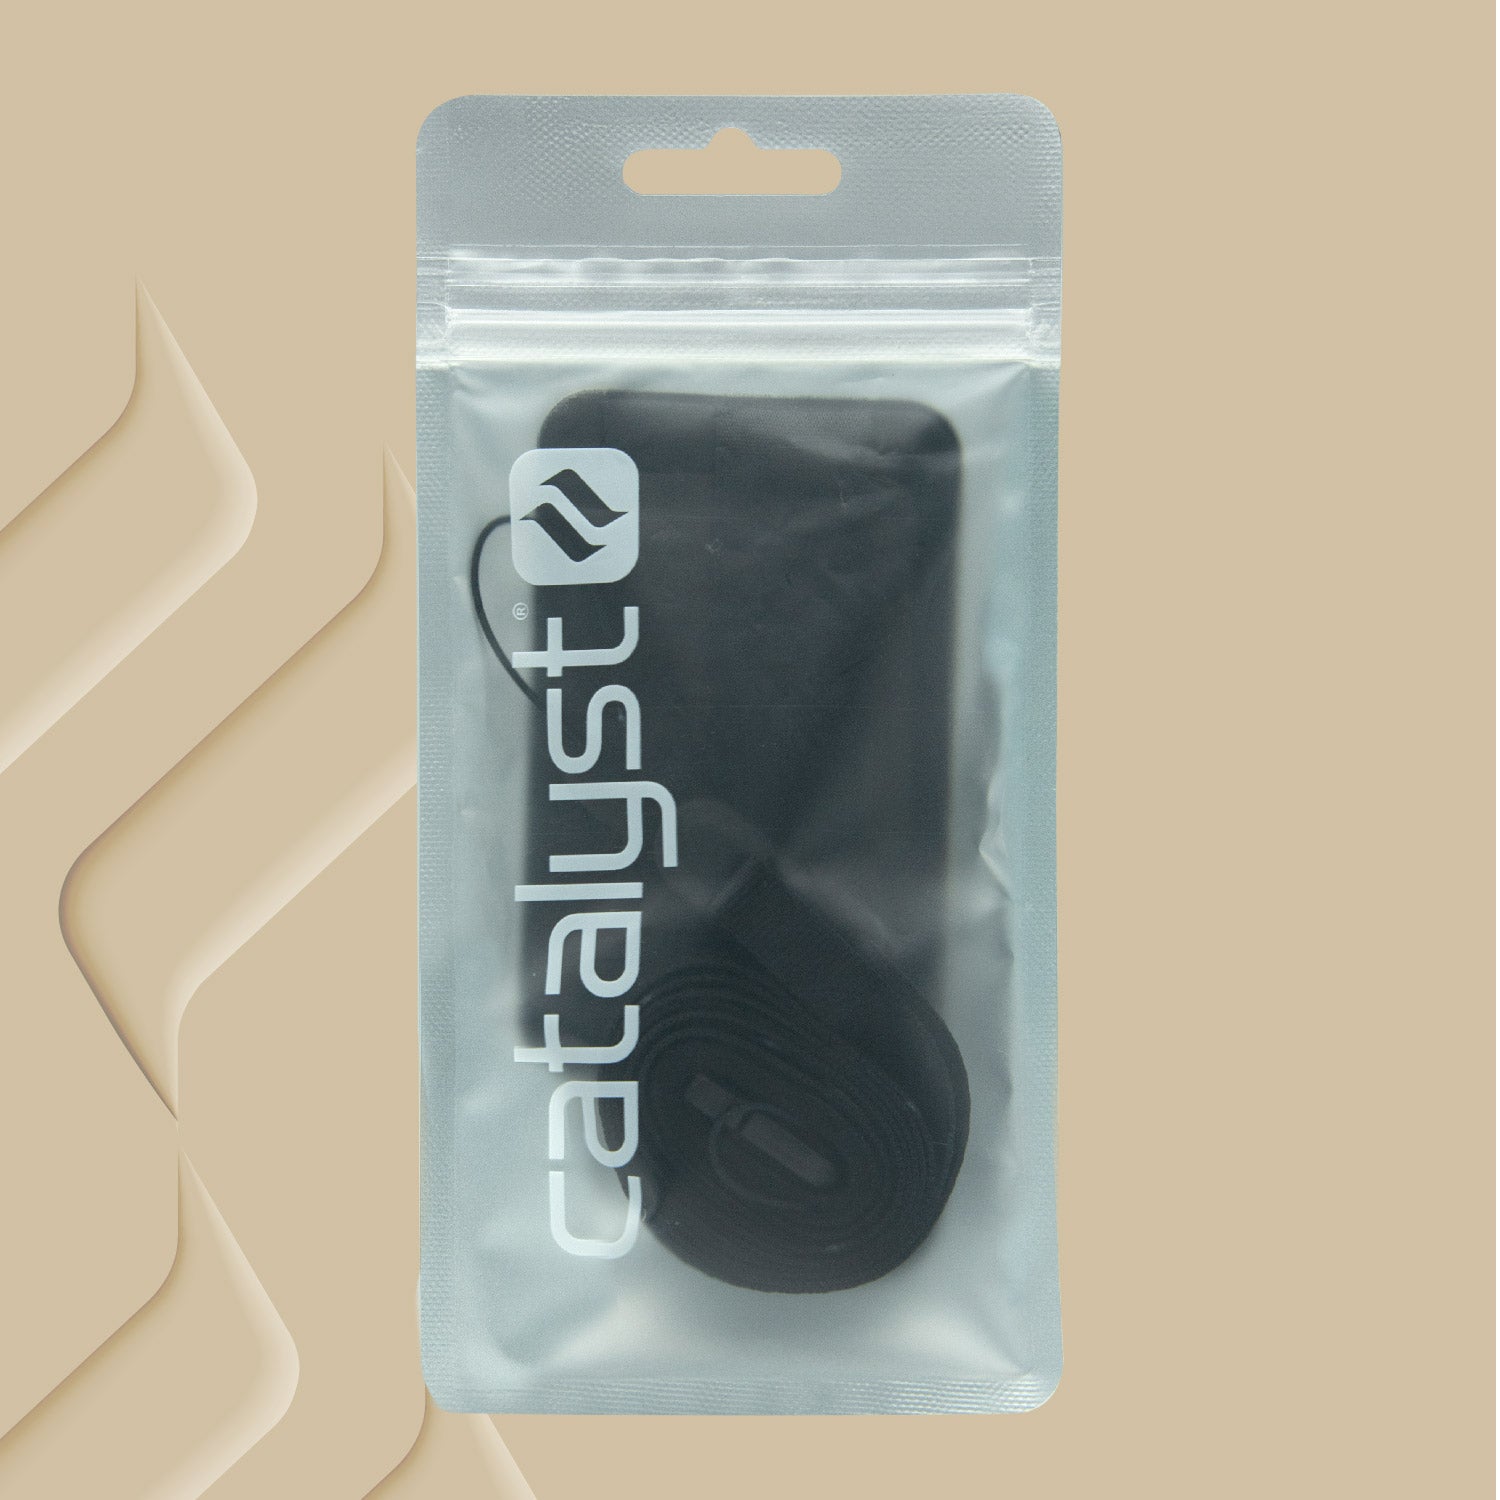 Catalyst stick on wallet and shoulder strap bundle wallet sample picture